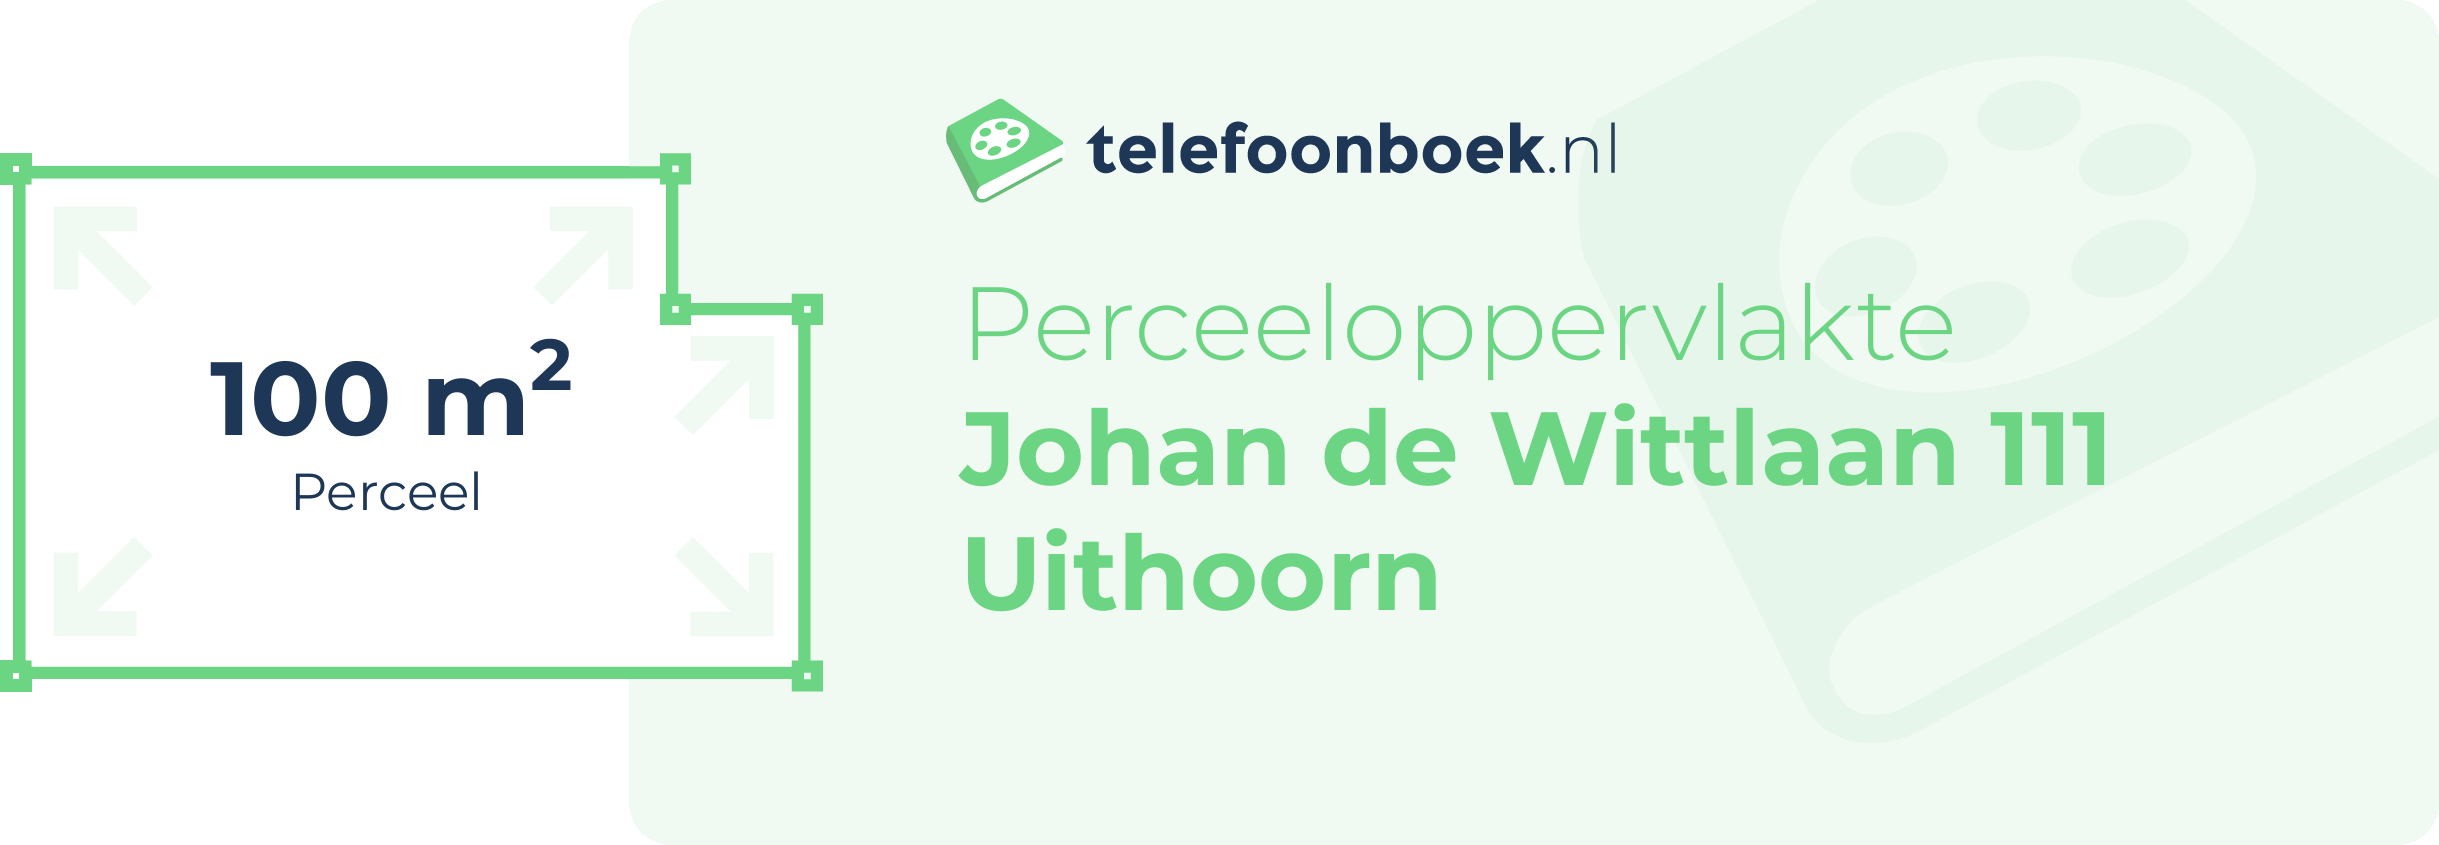 Perceeloppervlakte Johan De Wittlaan 111 Uithoorn